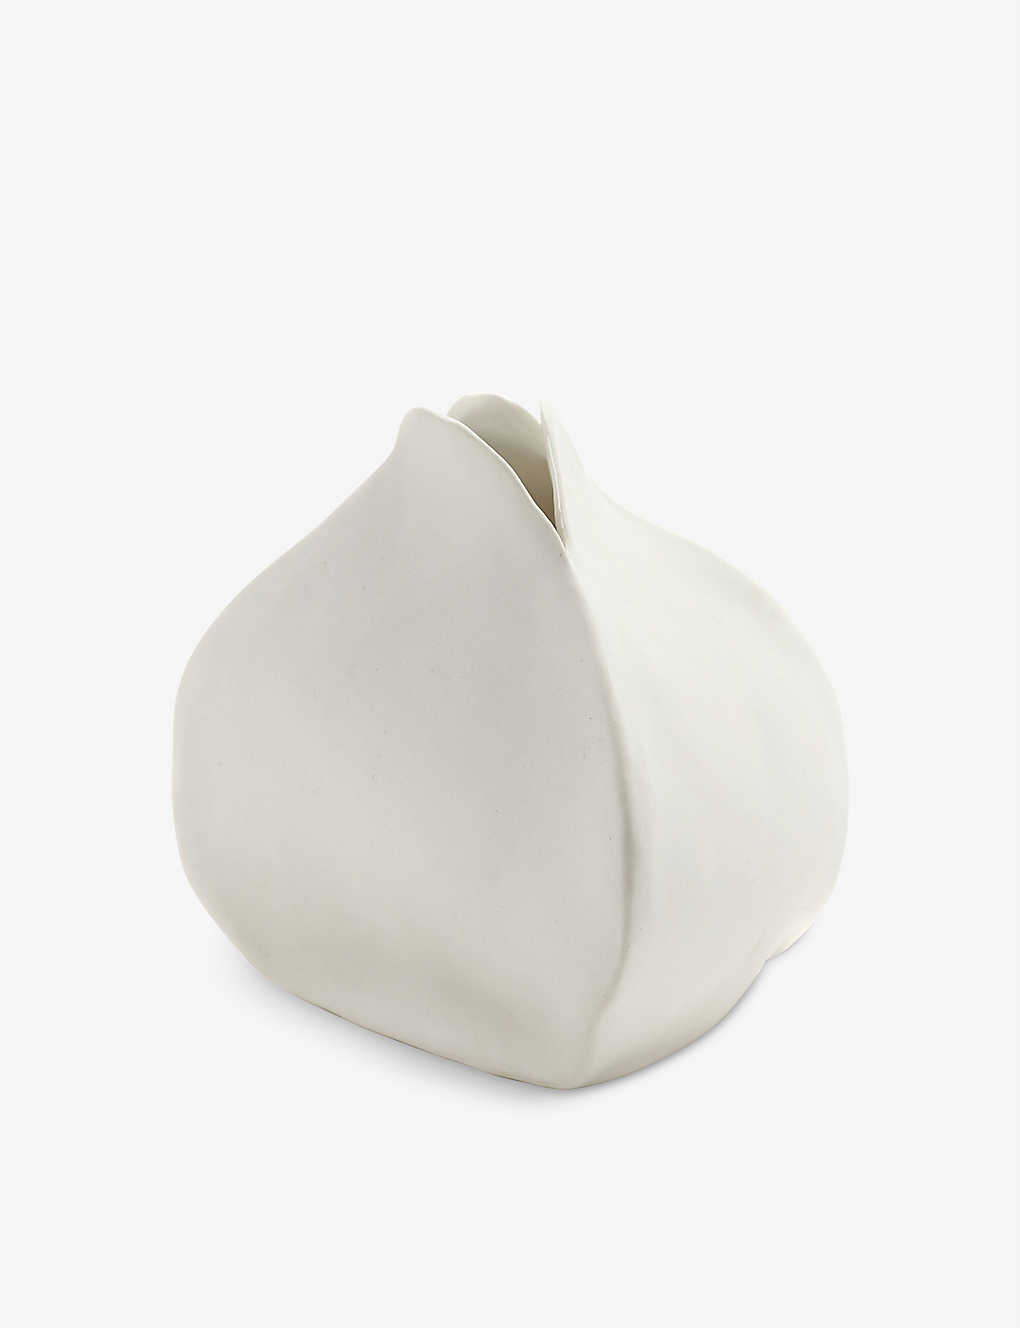 SERAX パーフェクト インパーフェクション 11 ポーセレイン ベース 10.5cm Perfect Imperfection 11 porcelain vase 10.5cm